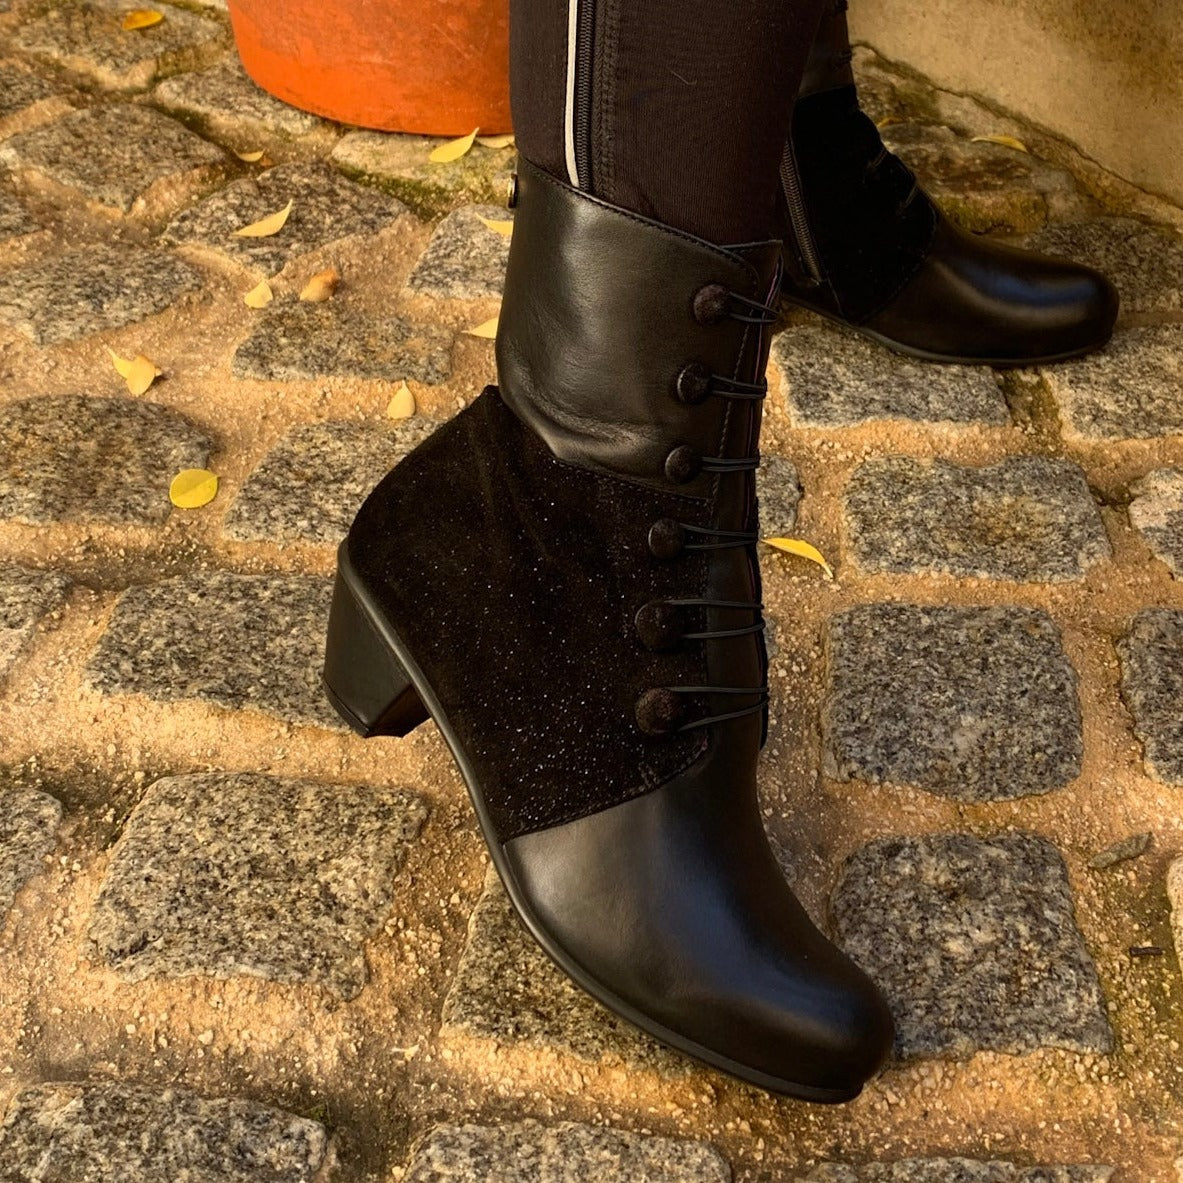 Chateau Noir - Black Button boot